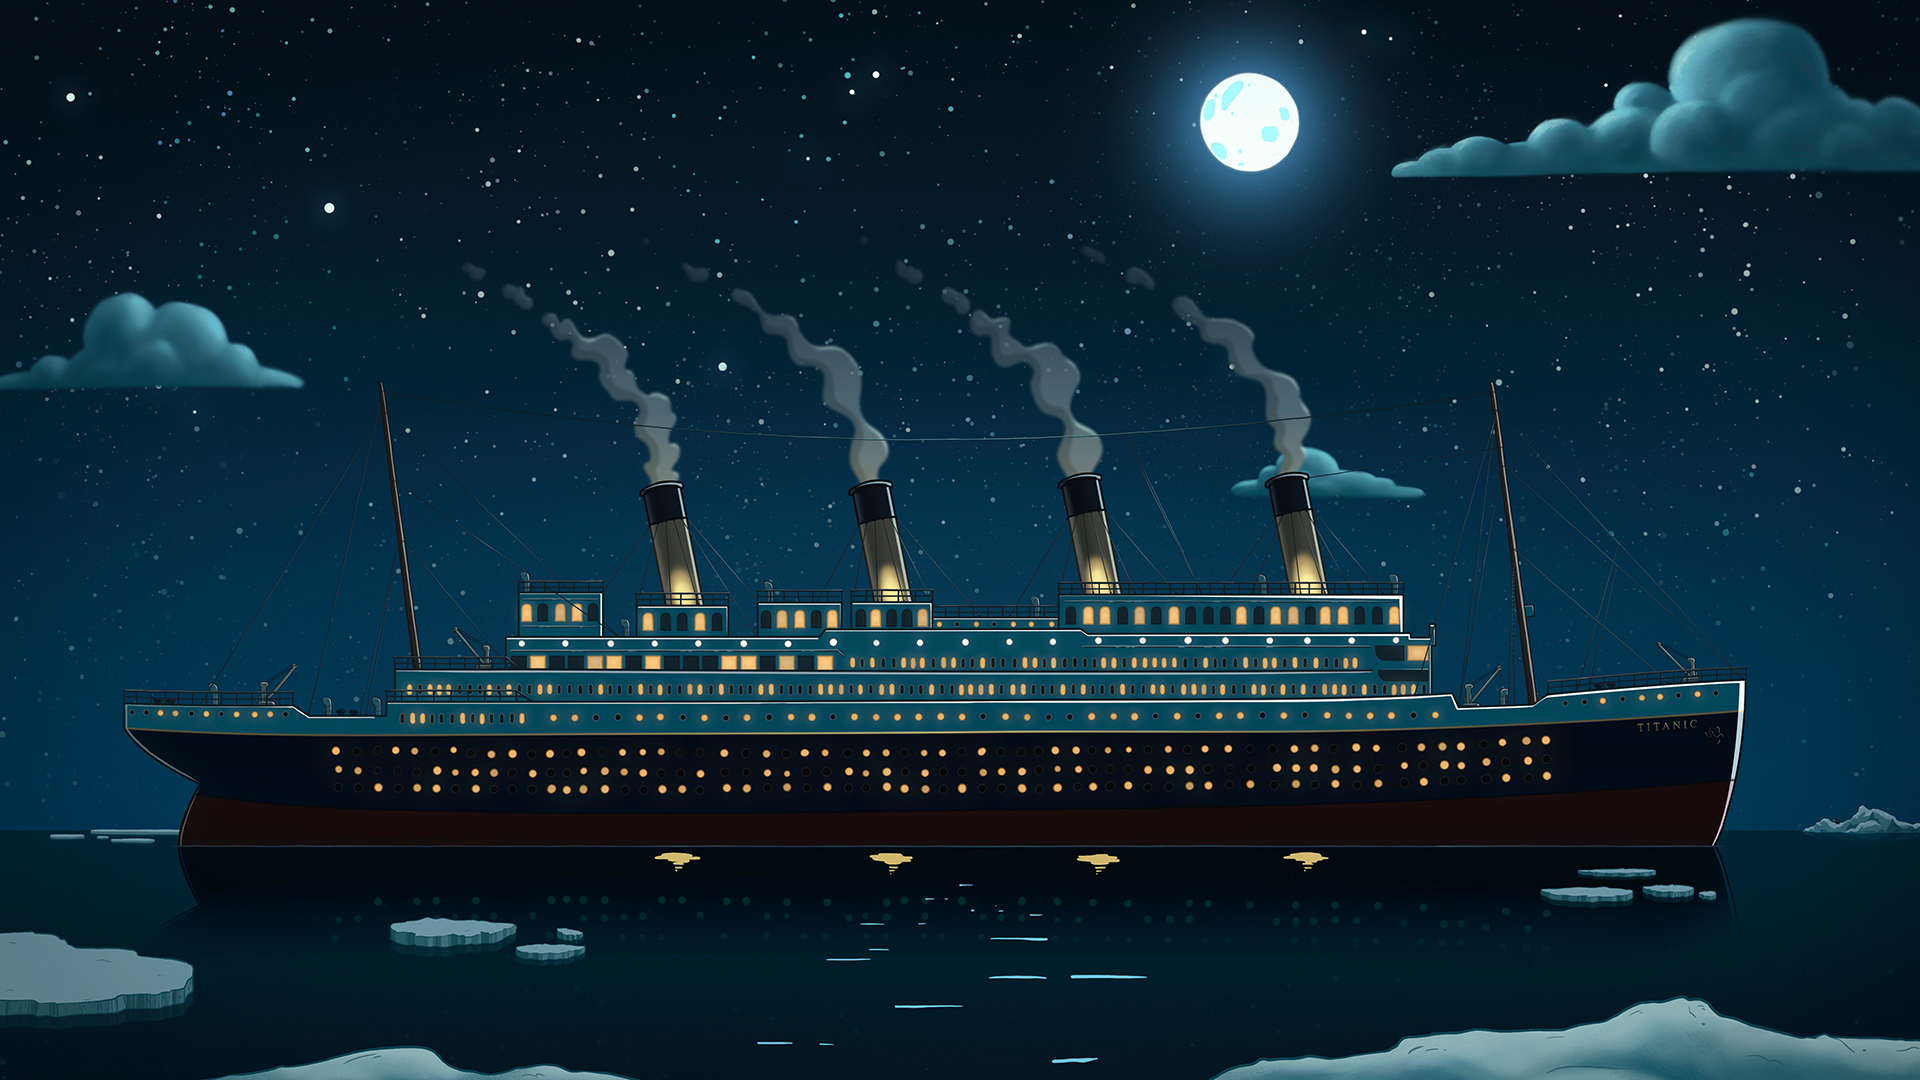 Jake Ransom Titanic background